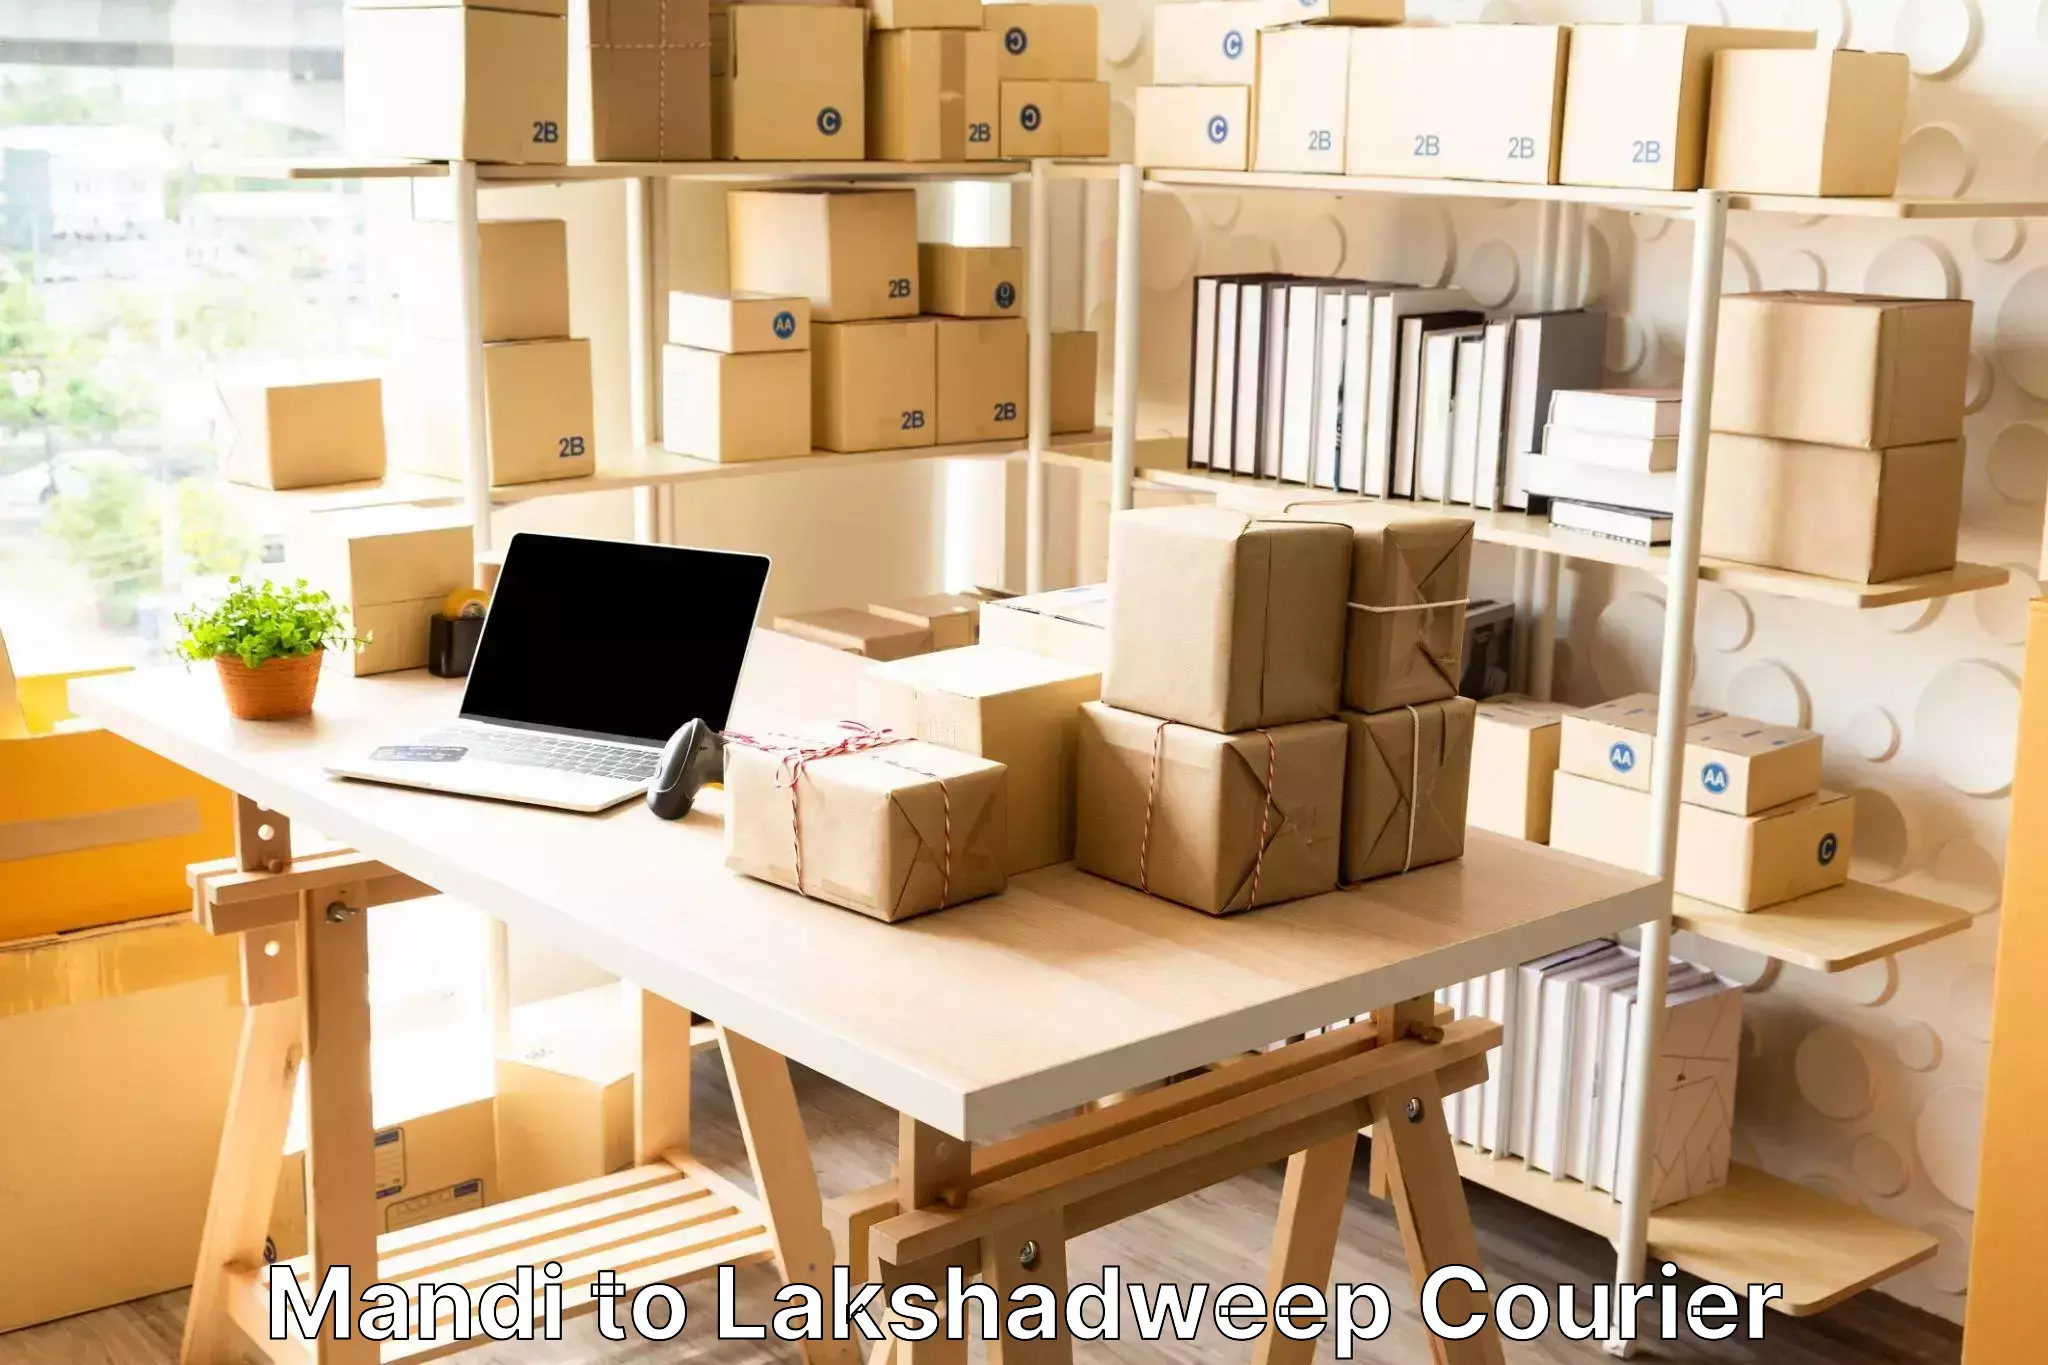 Online luggage shipping booking Mandi to Lakshadweep